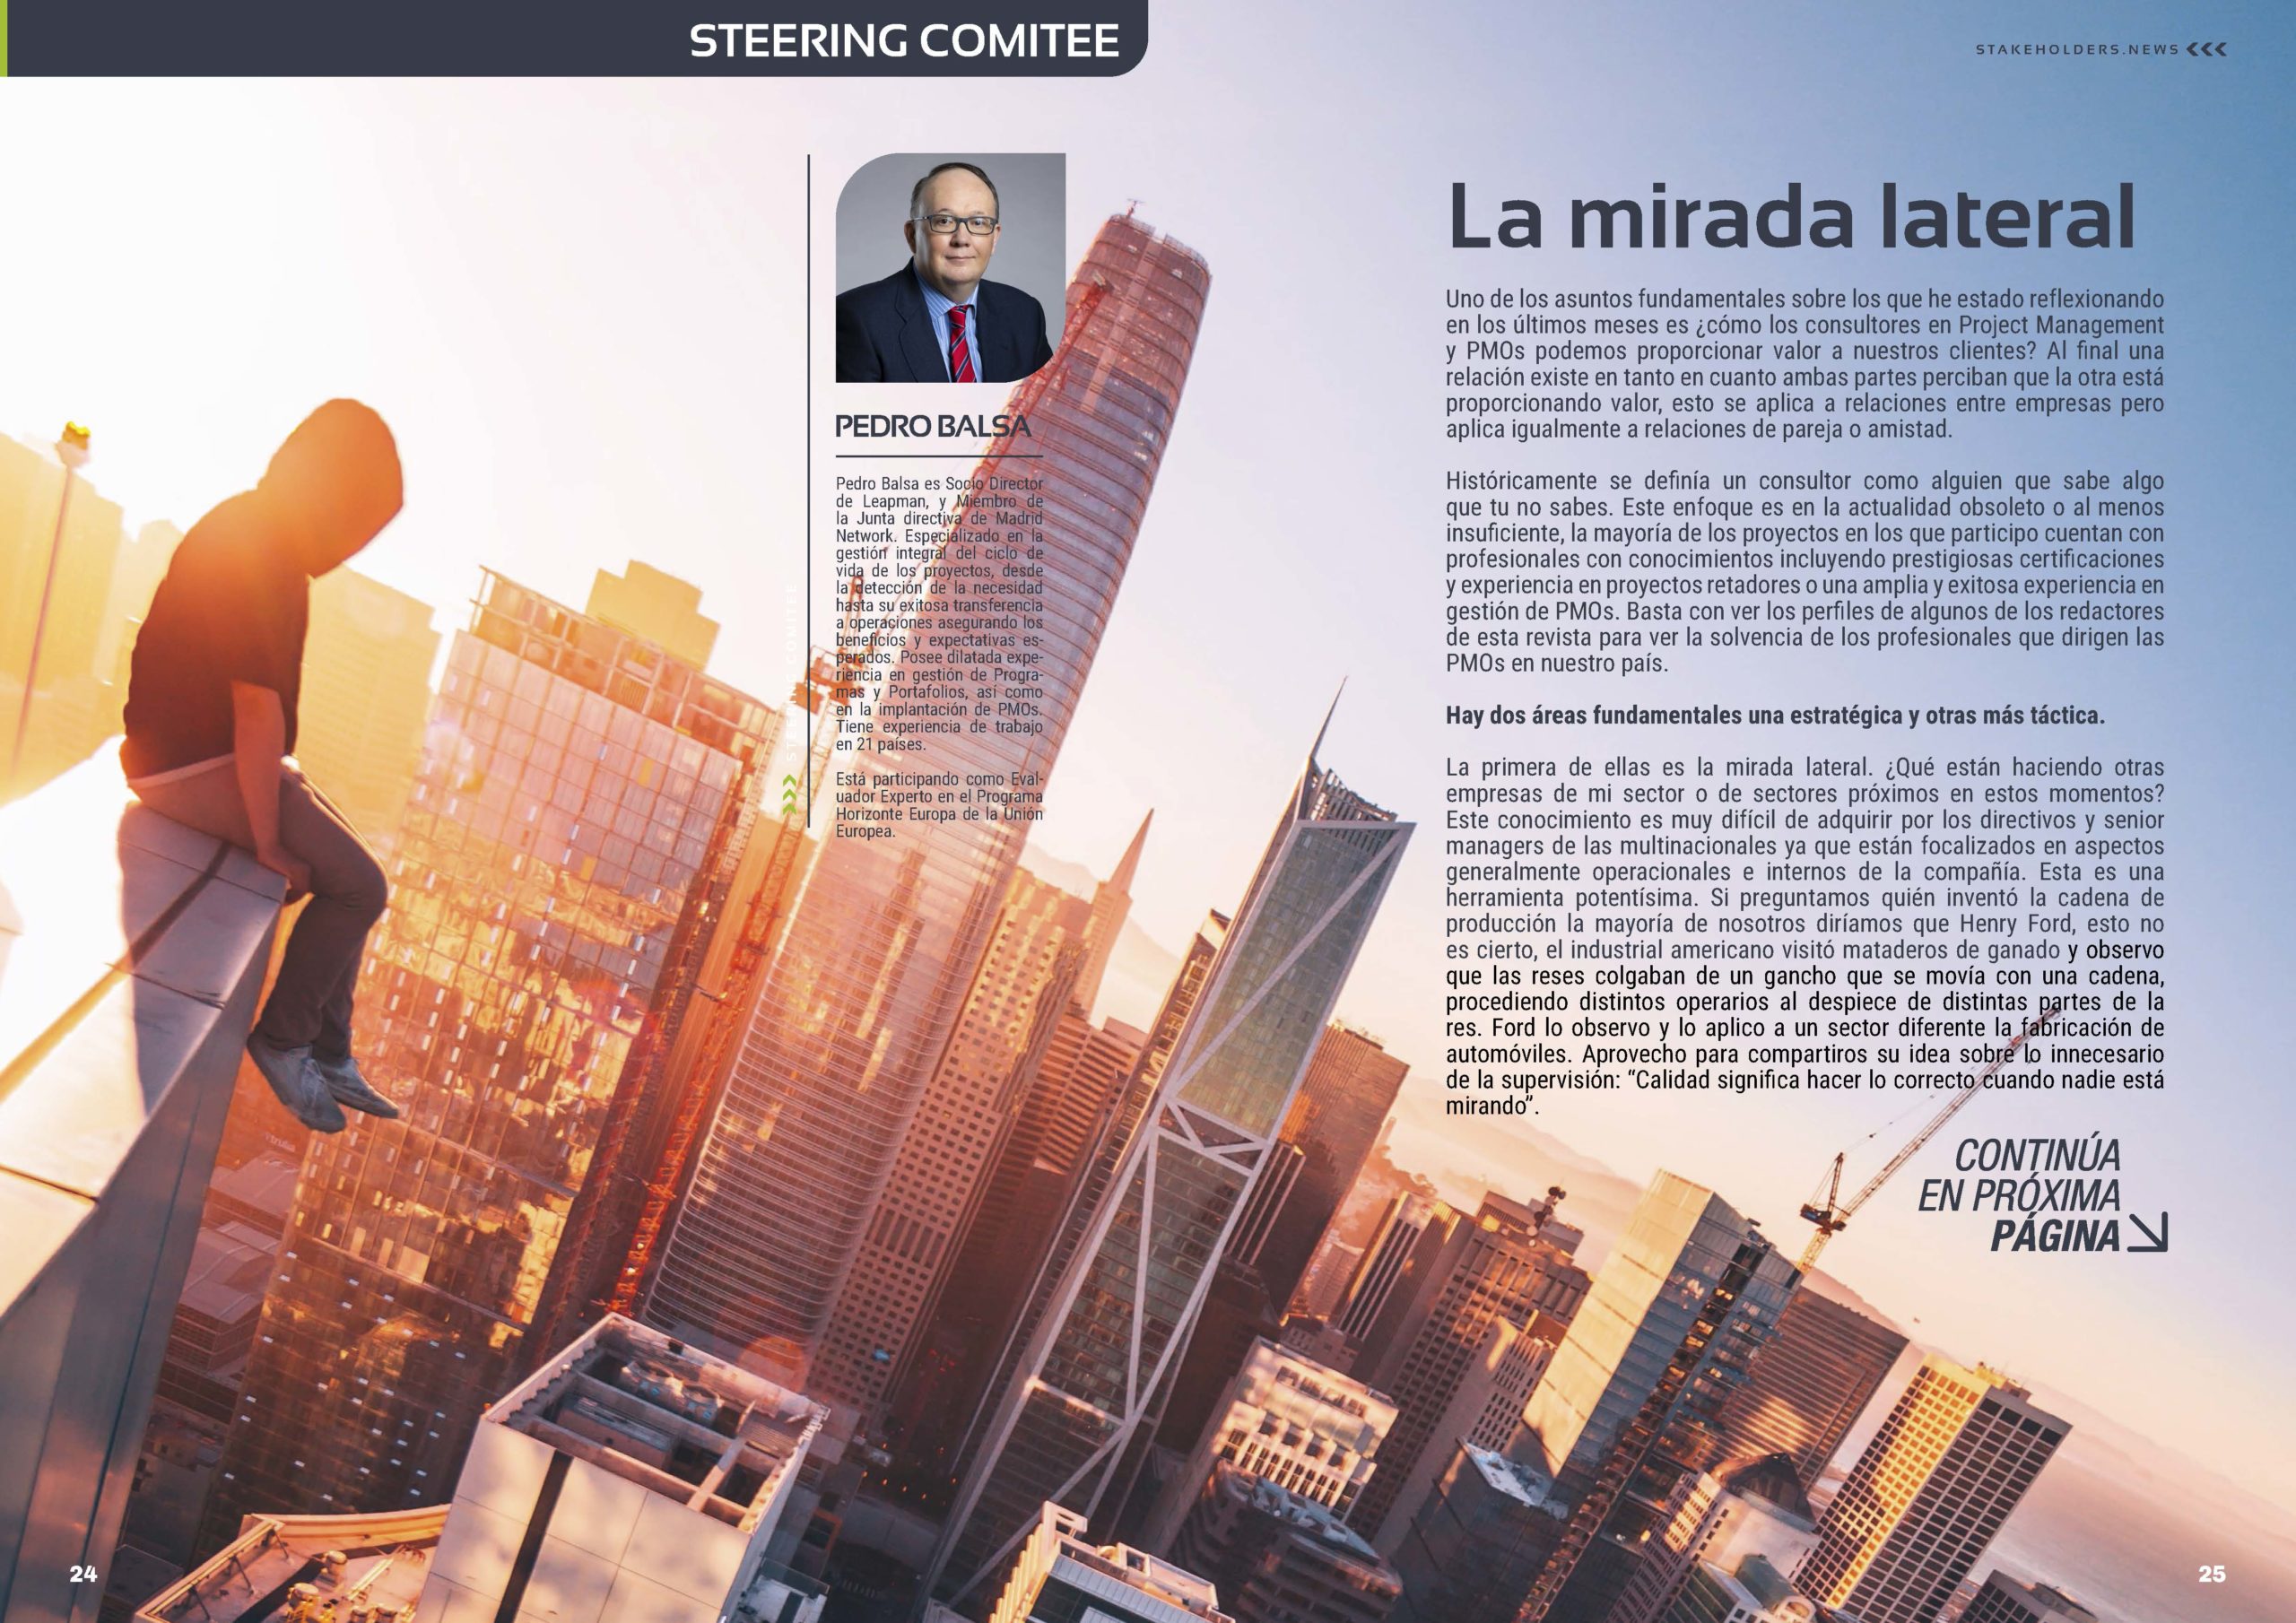 Articulo "La Mirada Lateral" de Pedro Balsa en la Sección "Steering Comitee" de la Revista Stakeholders.news